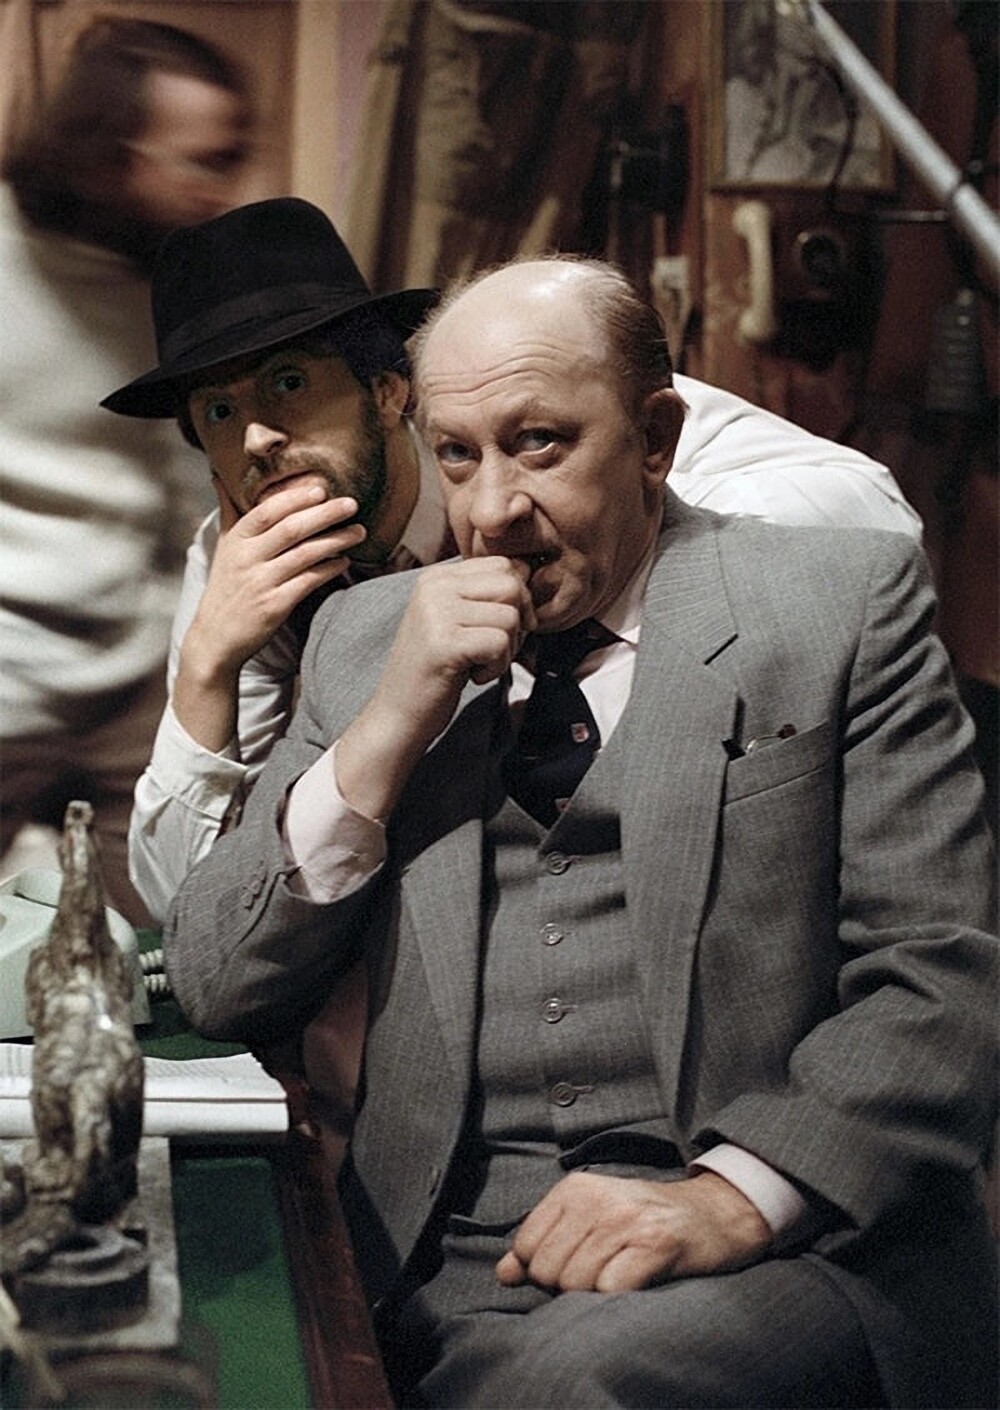 Евгений Евстигнеев и Леонид Ярмольник на съемках телесериала "Игра в детектив", 14 июля 1988 года.